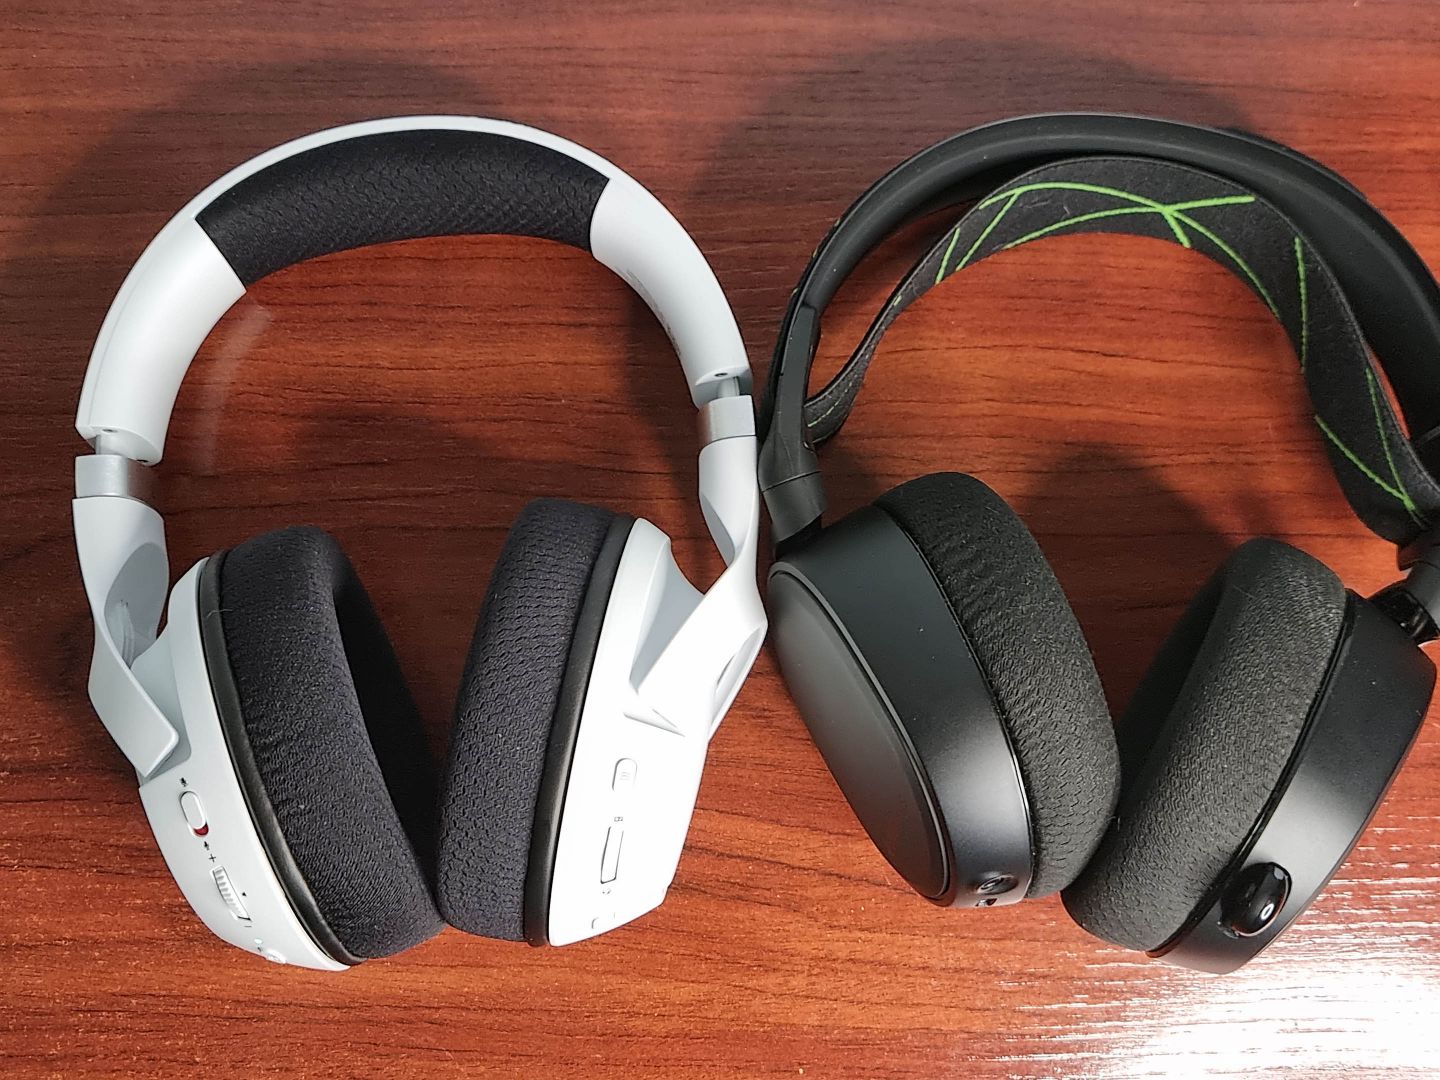 Analizamos los Razer Kaira Pro White, la nueva versión de uno de los mejores auriculares para Xbox - Hoy os traemos nuestras impresiones tras probar varios días los nuevos Razer Kaira Pro White, la nueva versión de estos fantásticos auriculares.